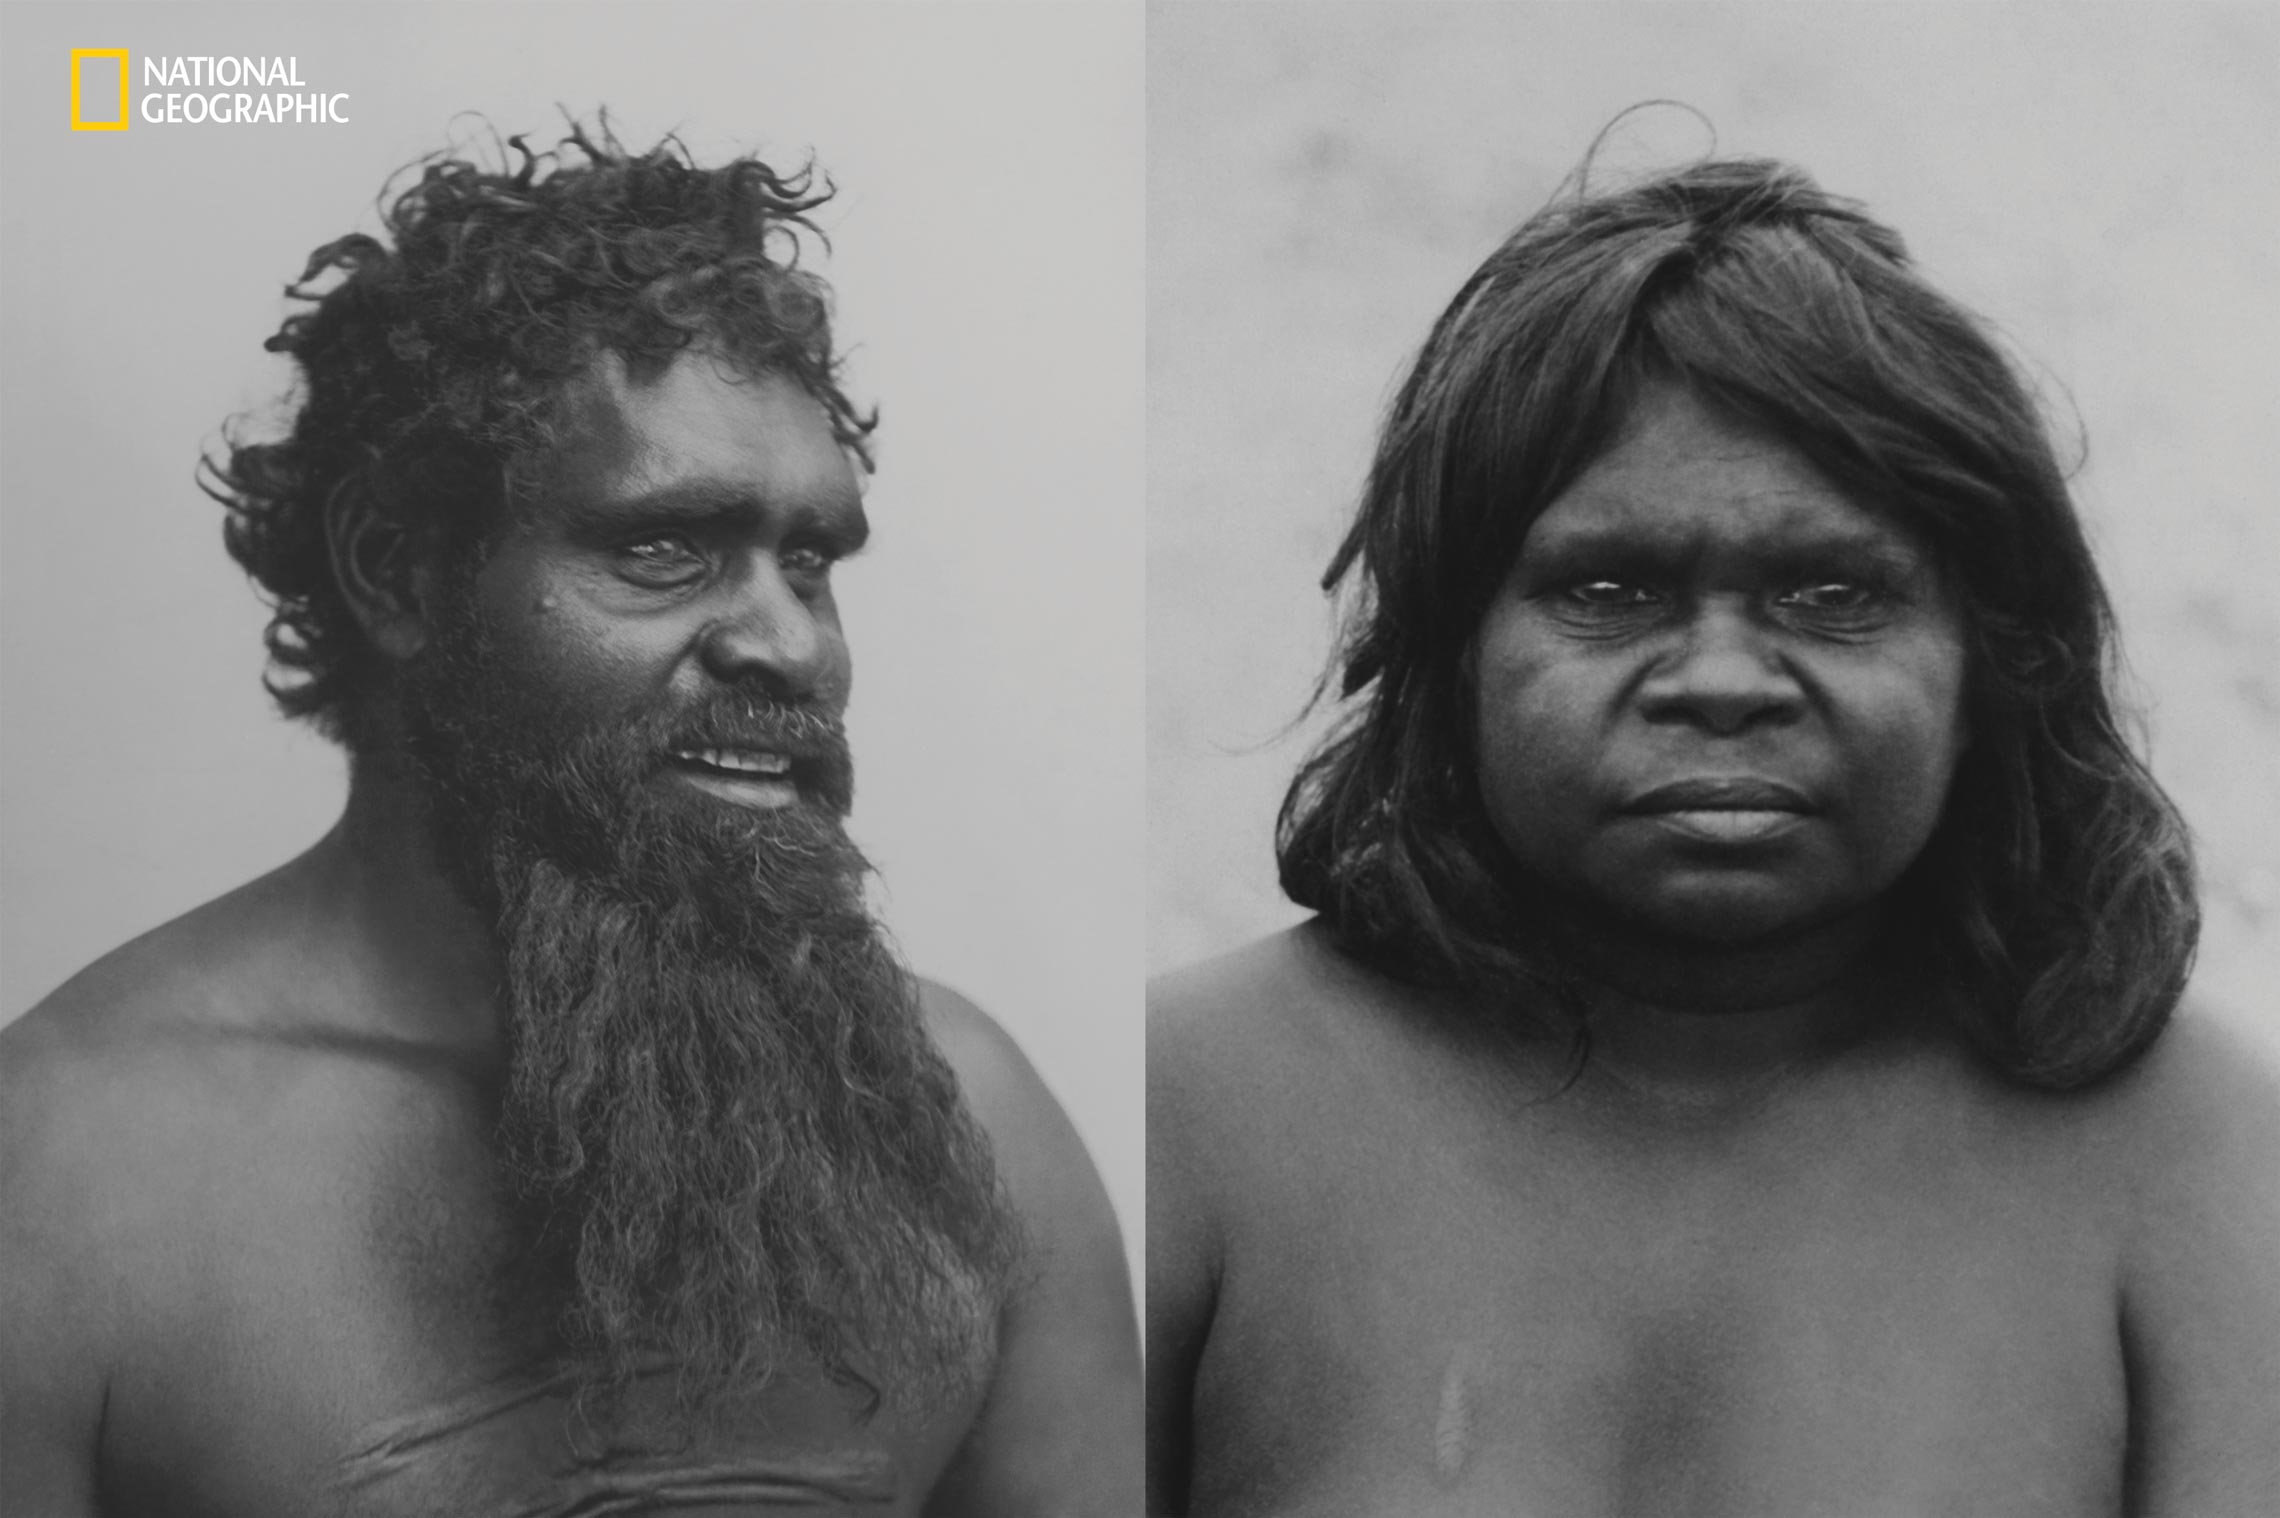 Australian Aborigine men